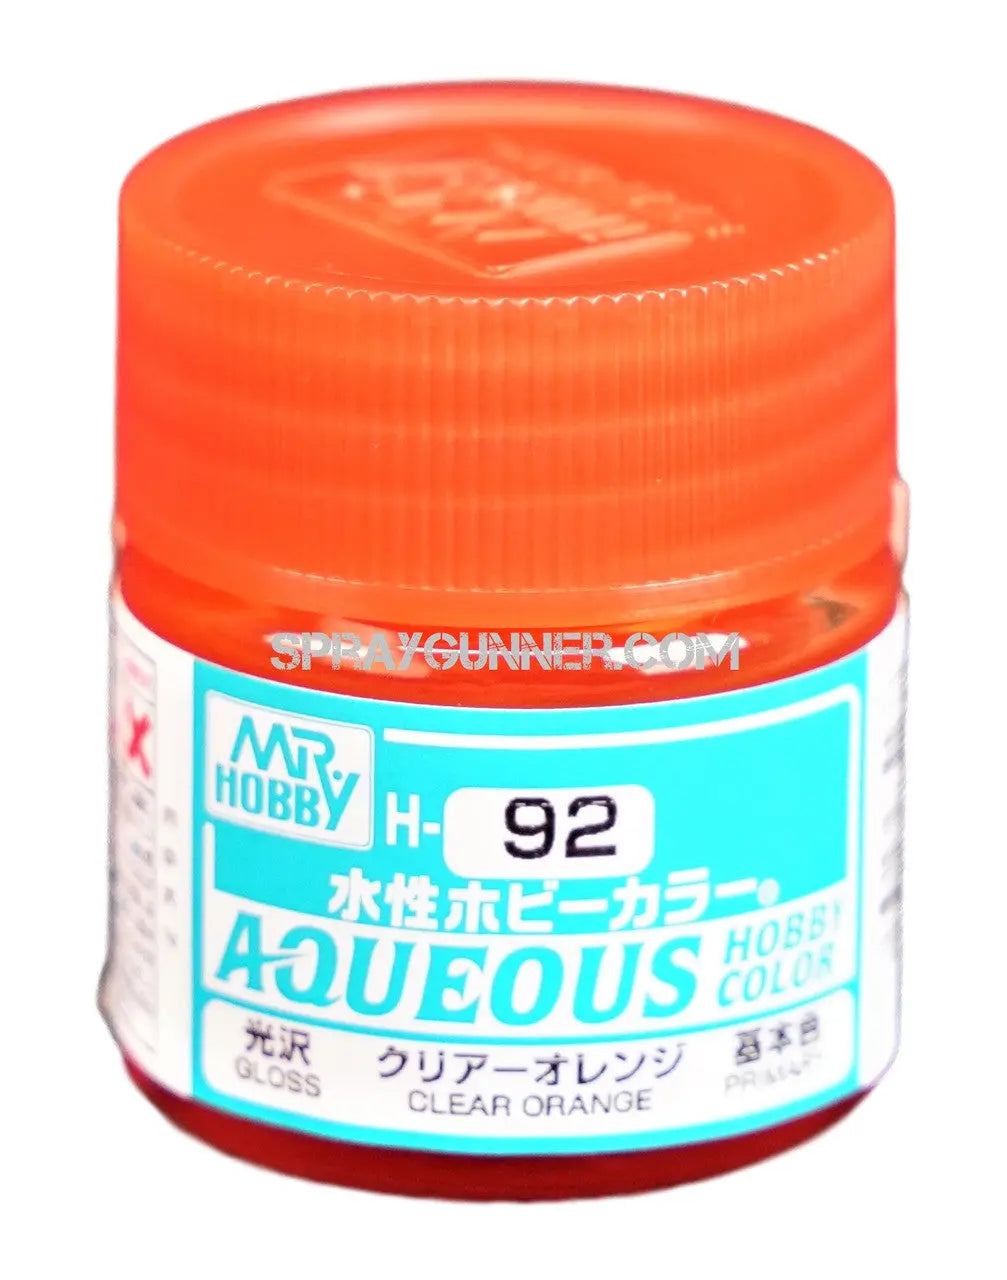 Mr. Hobby Aqueous H92 Naranja transparente brillante